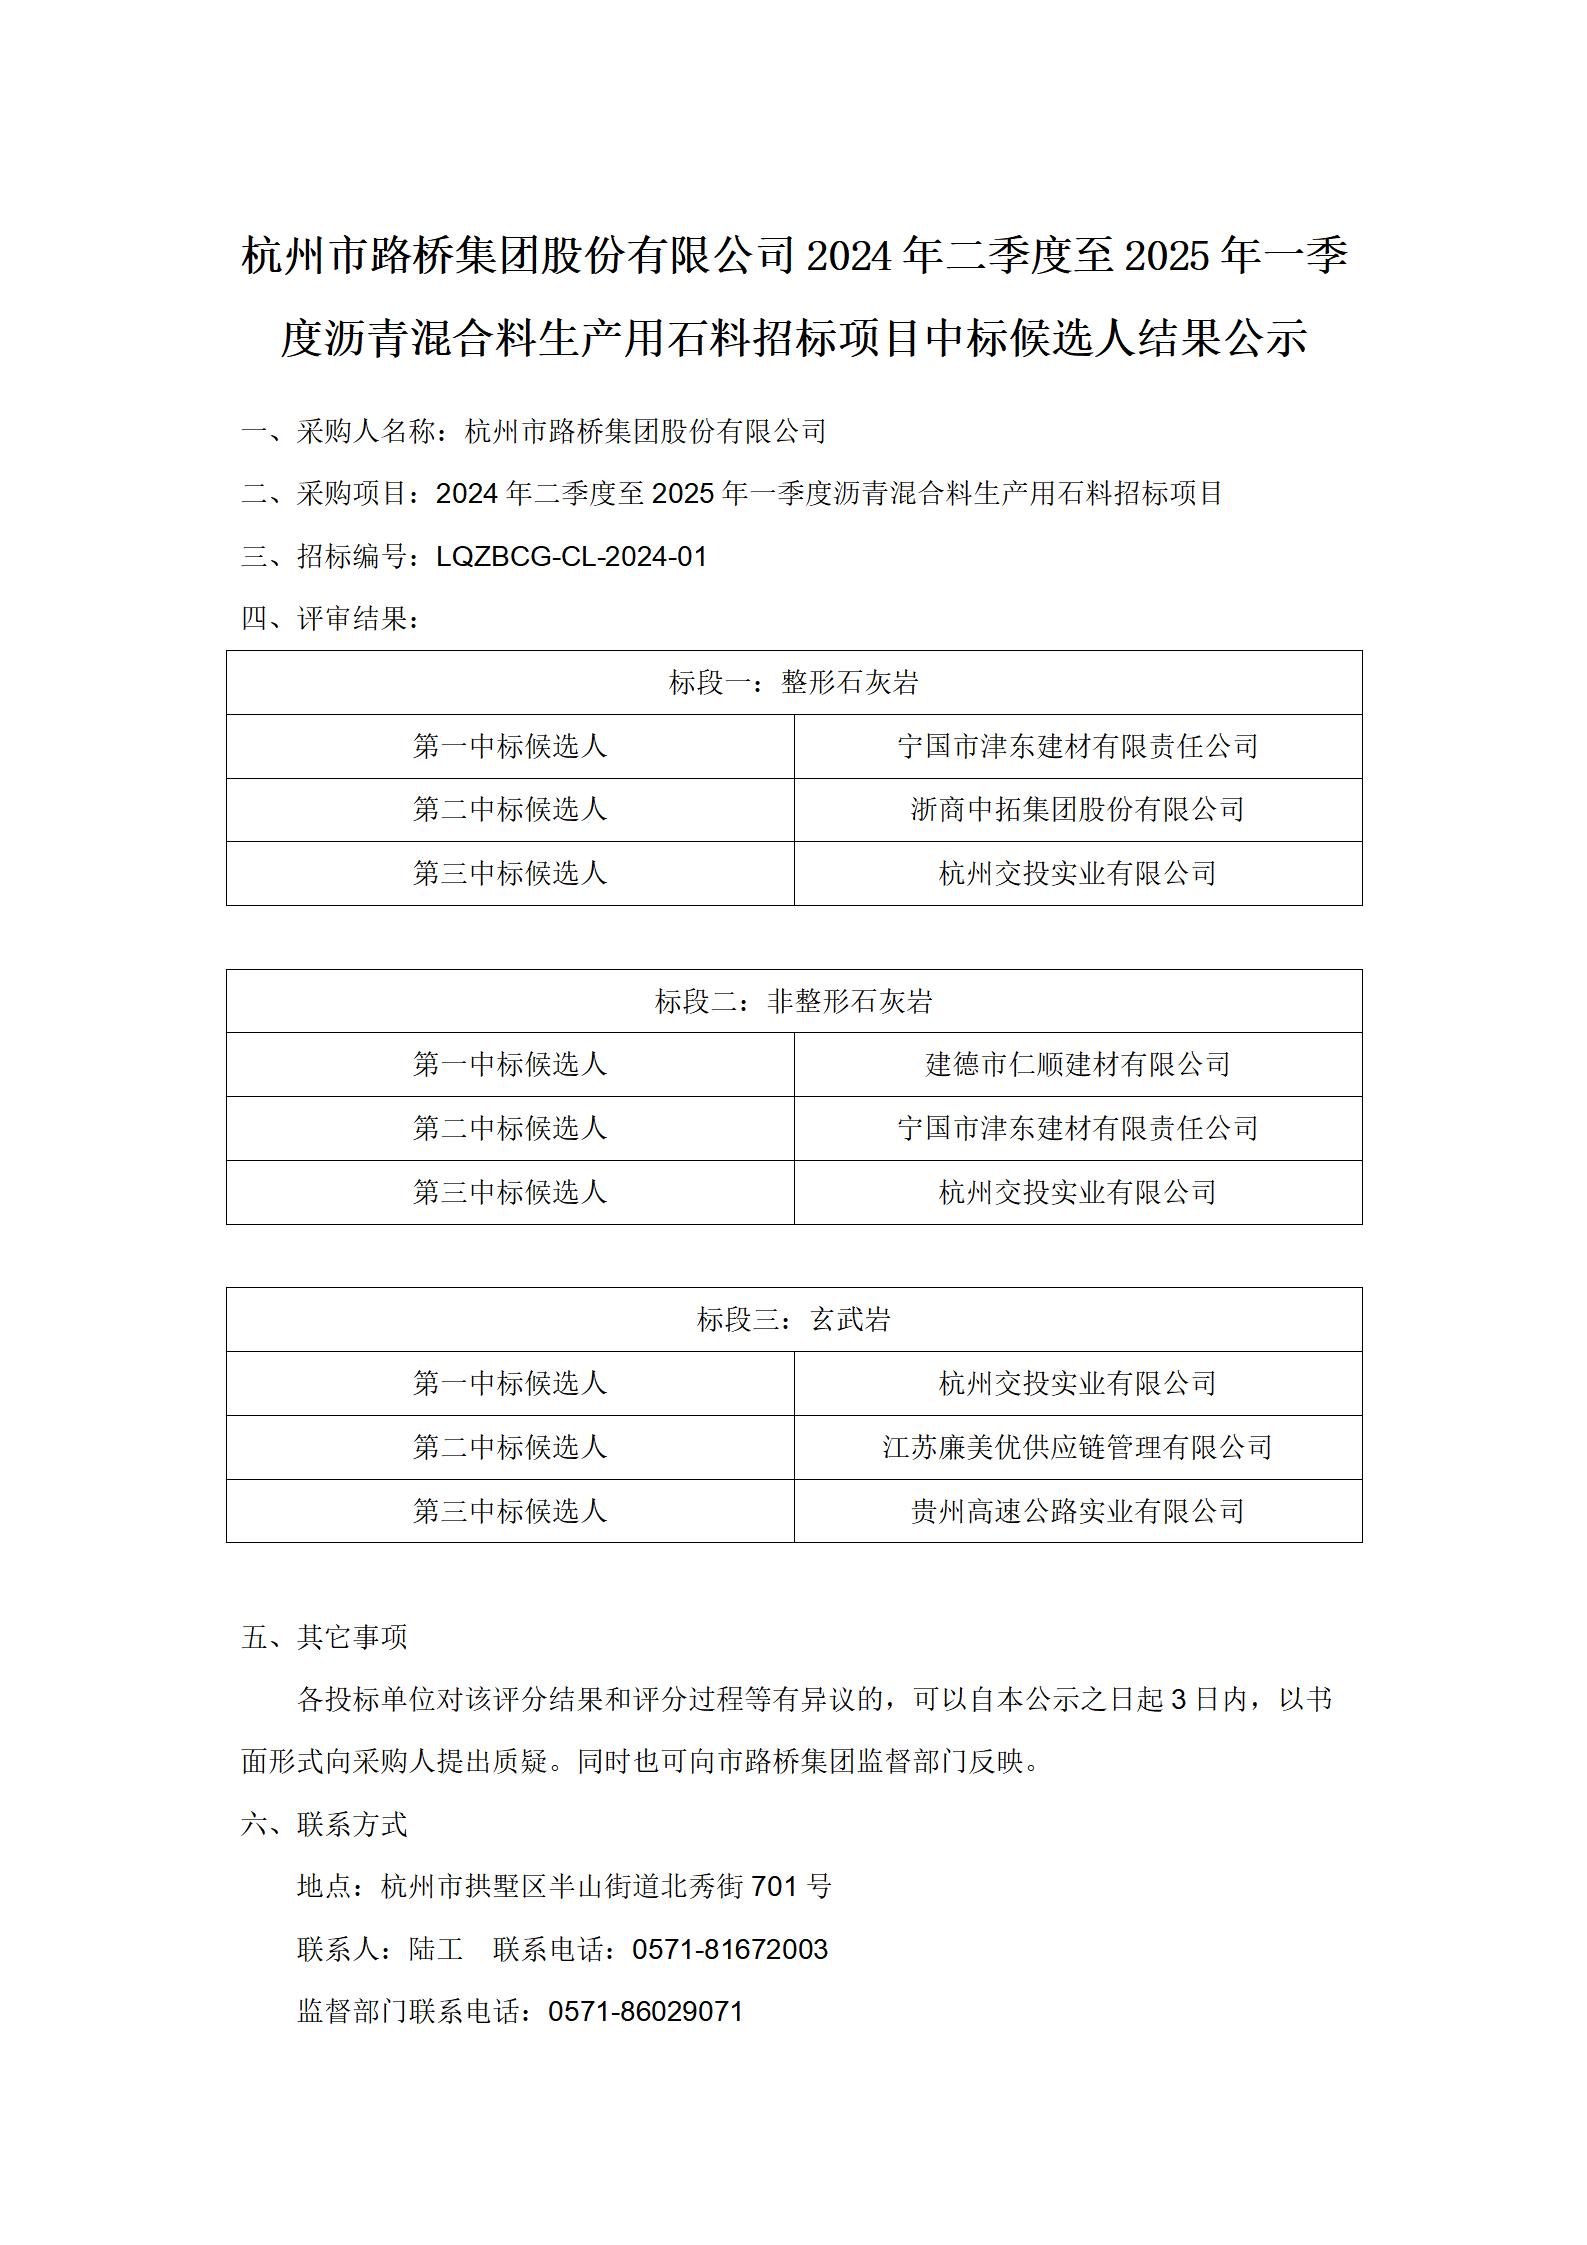 中标候选人结果公示-杭州市6165cc金沙总站检测中心股份有限公司2024年二季度-2025年一季度沥青混合料生产用石料招标项目_01.jpg